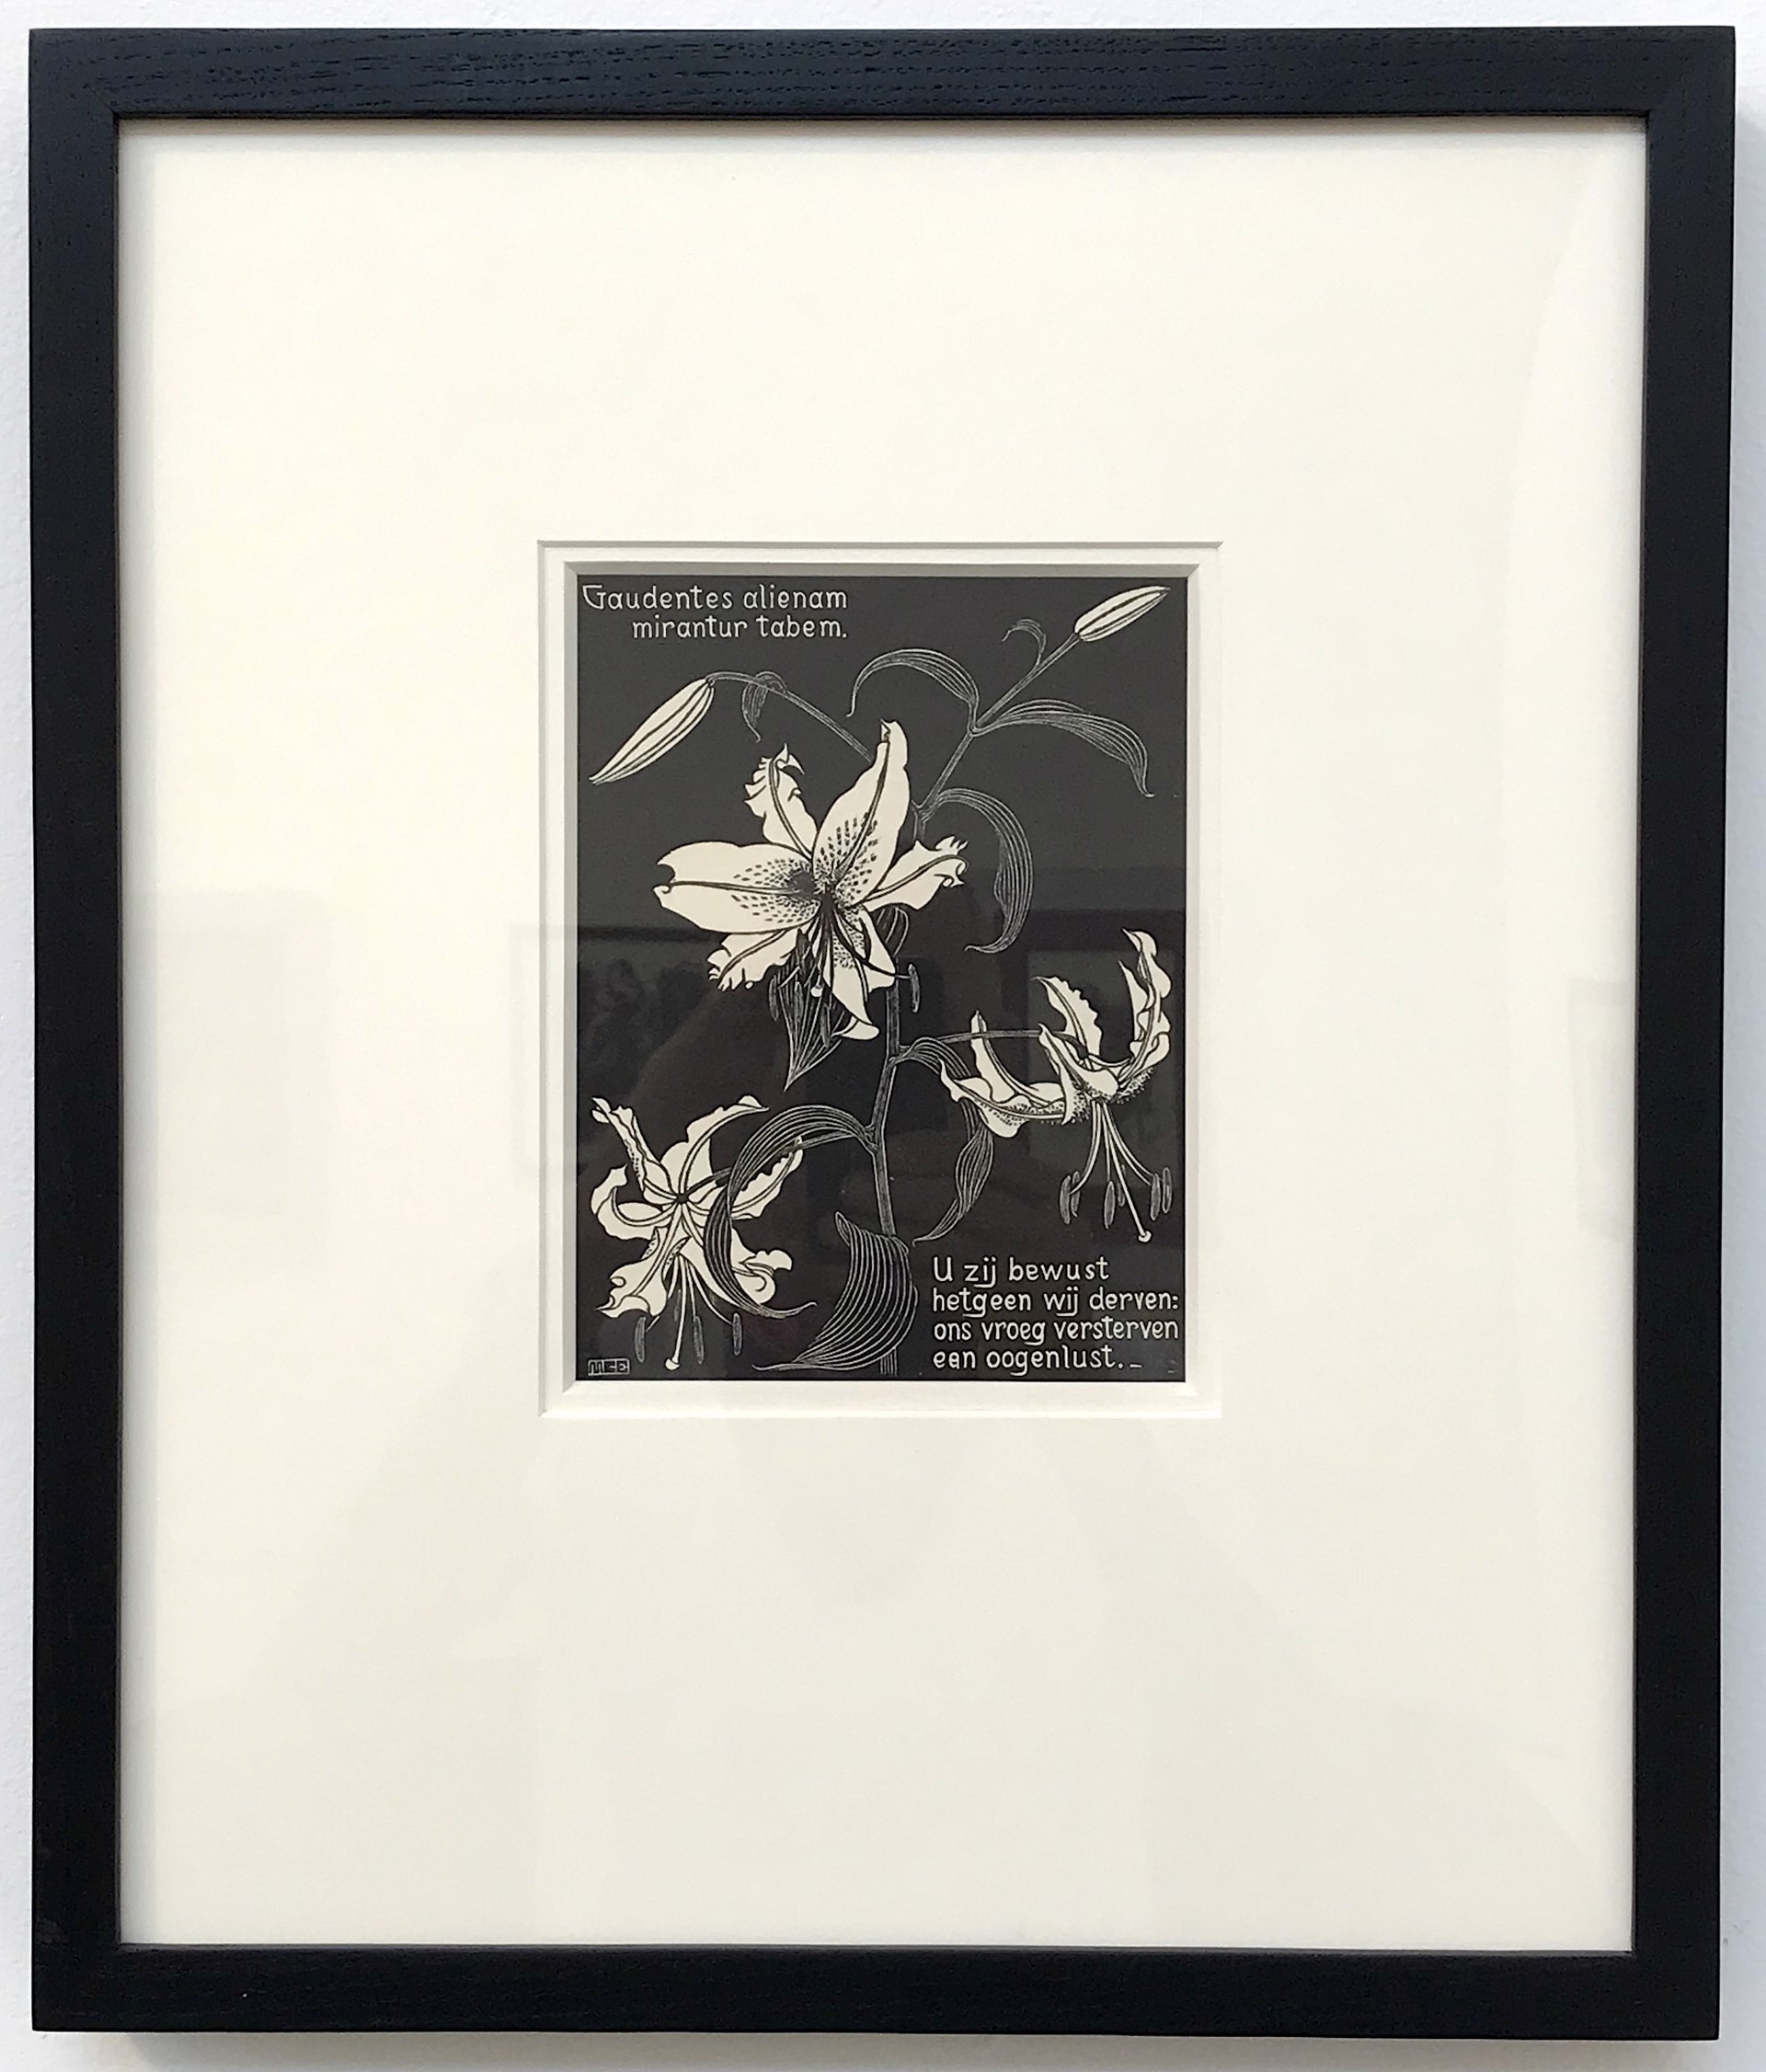 Flowers, Lilies by M.C. Escher